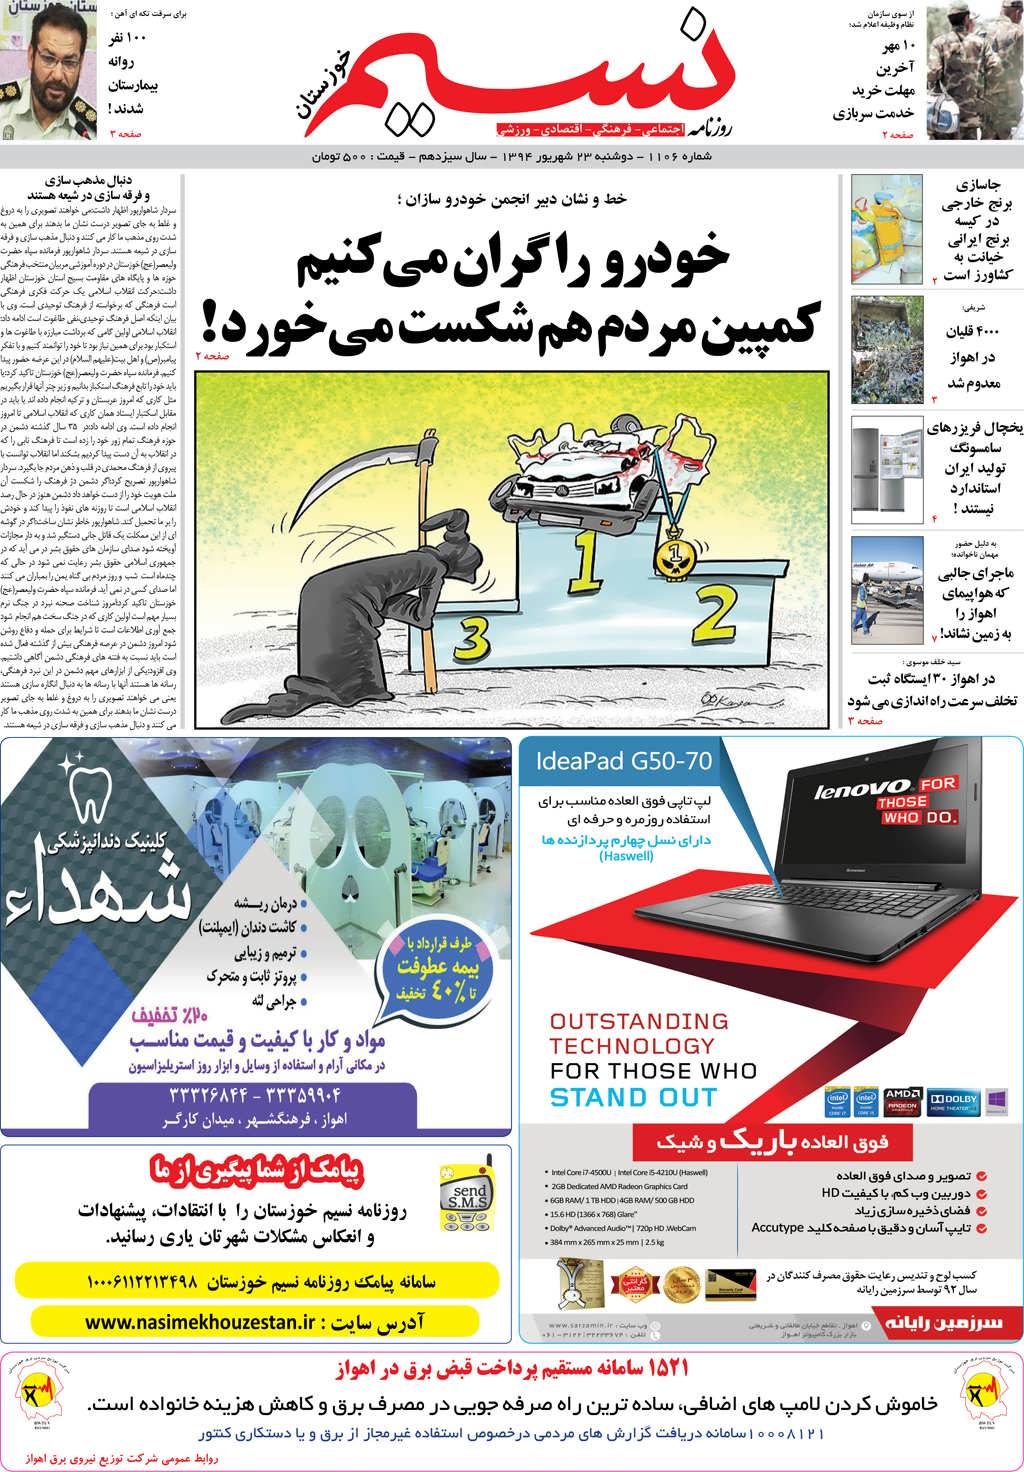 صفحه اصلی روزنامه نسیم شماره 1106